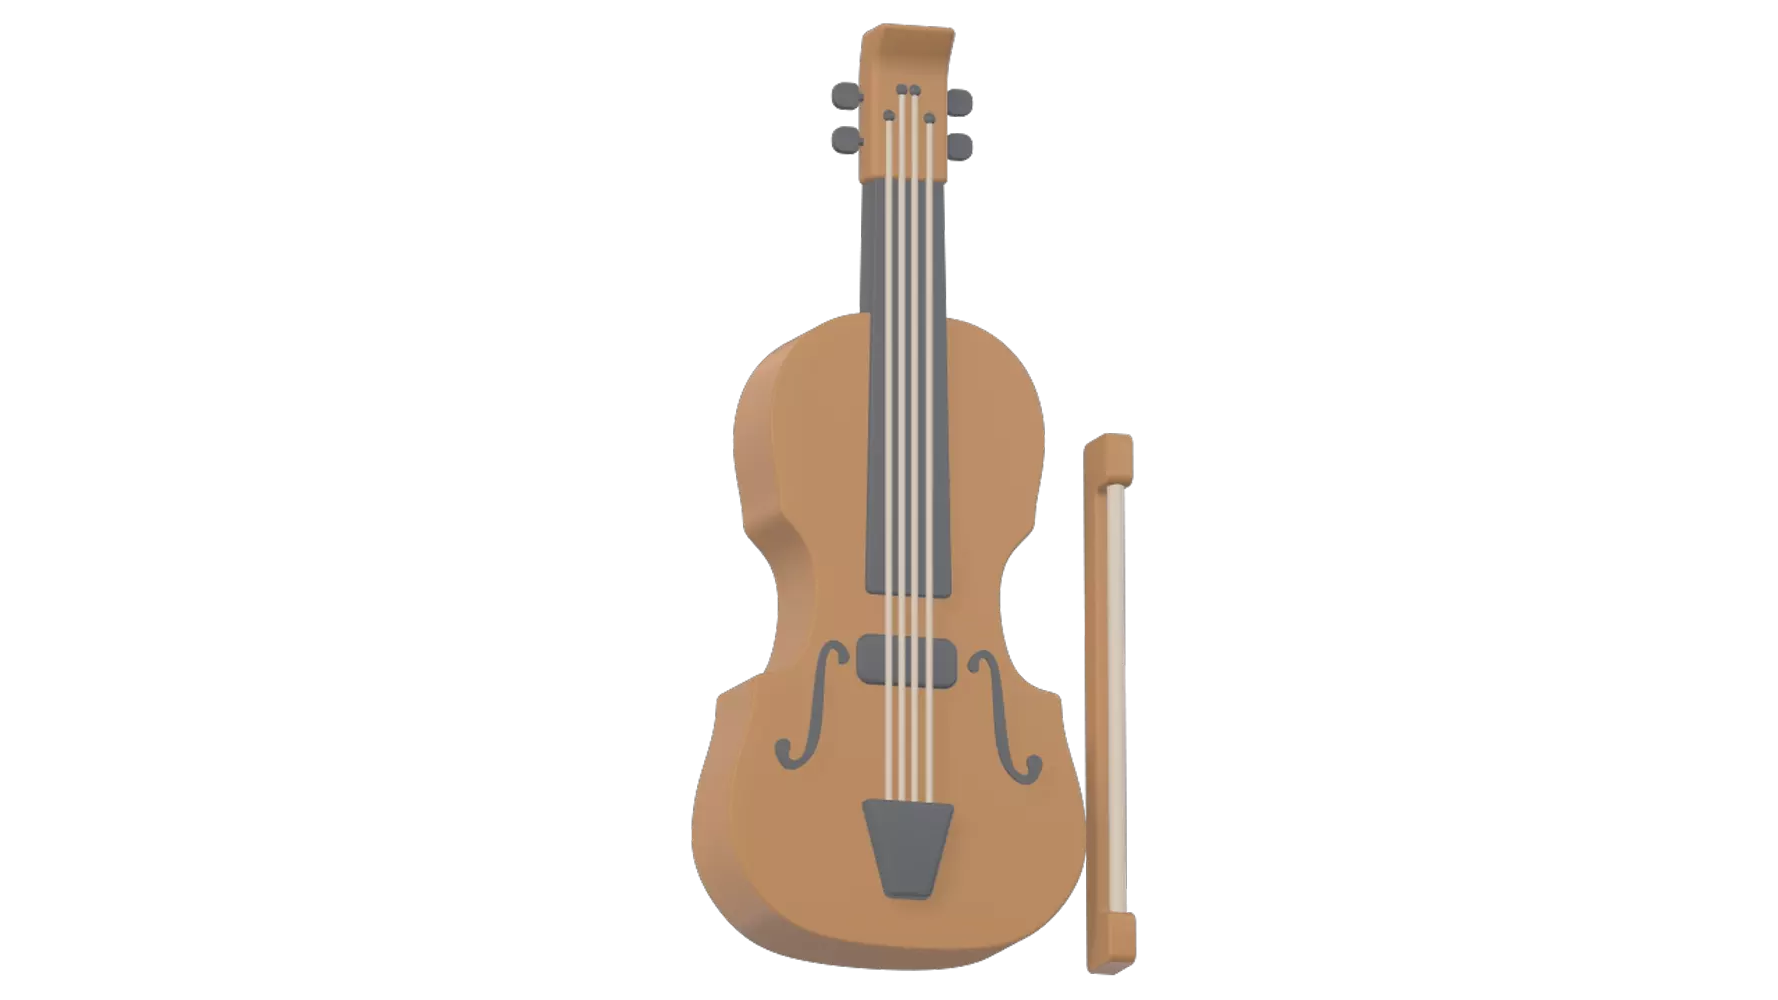 Violin 3d model--b53a52bd-cbea-4bef-975a-e4847f336197